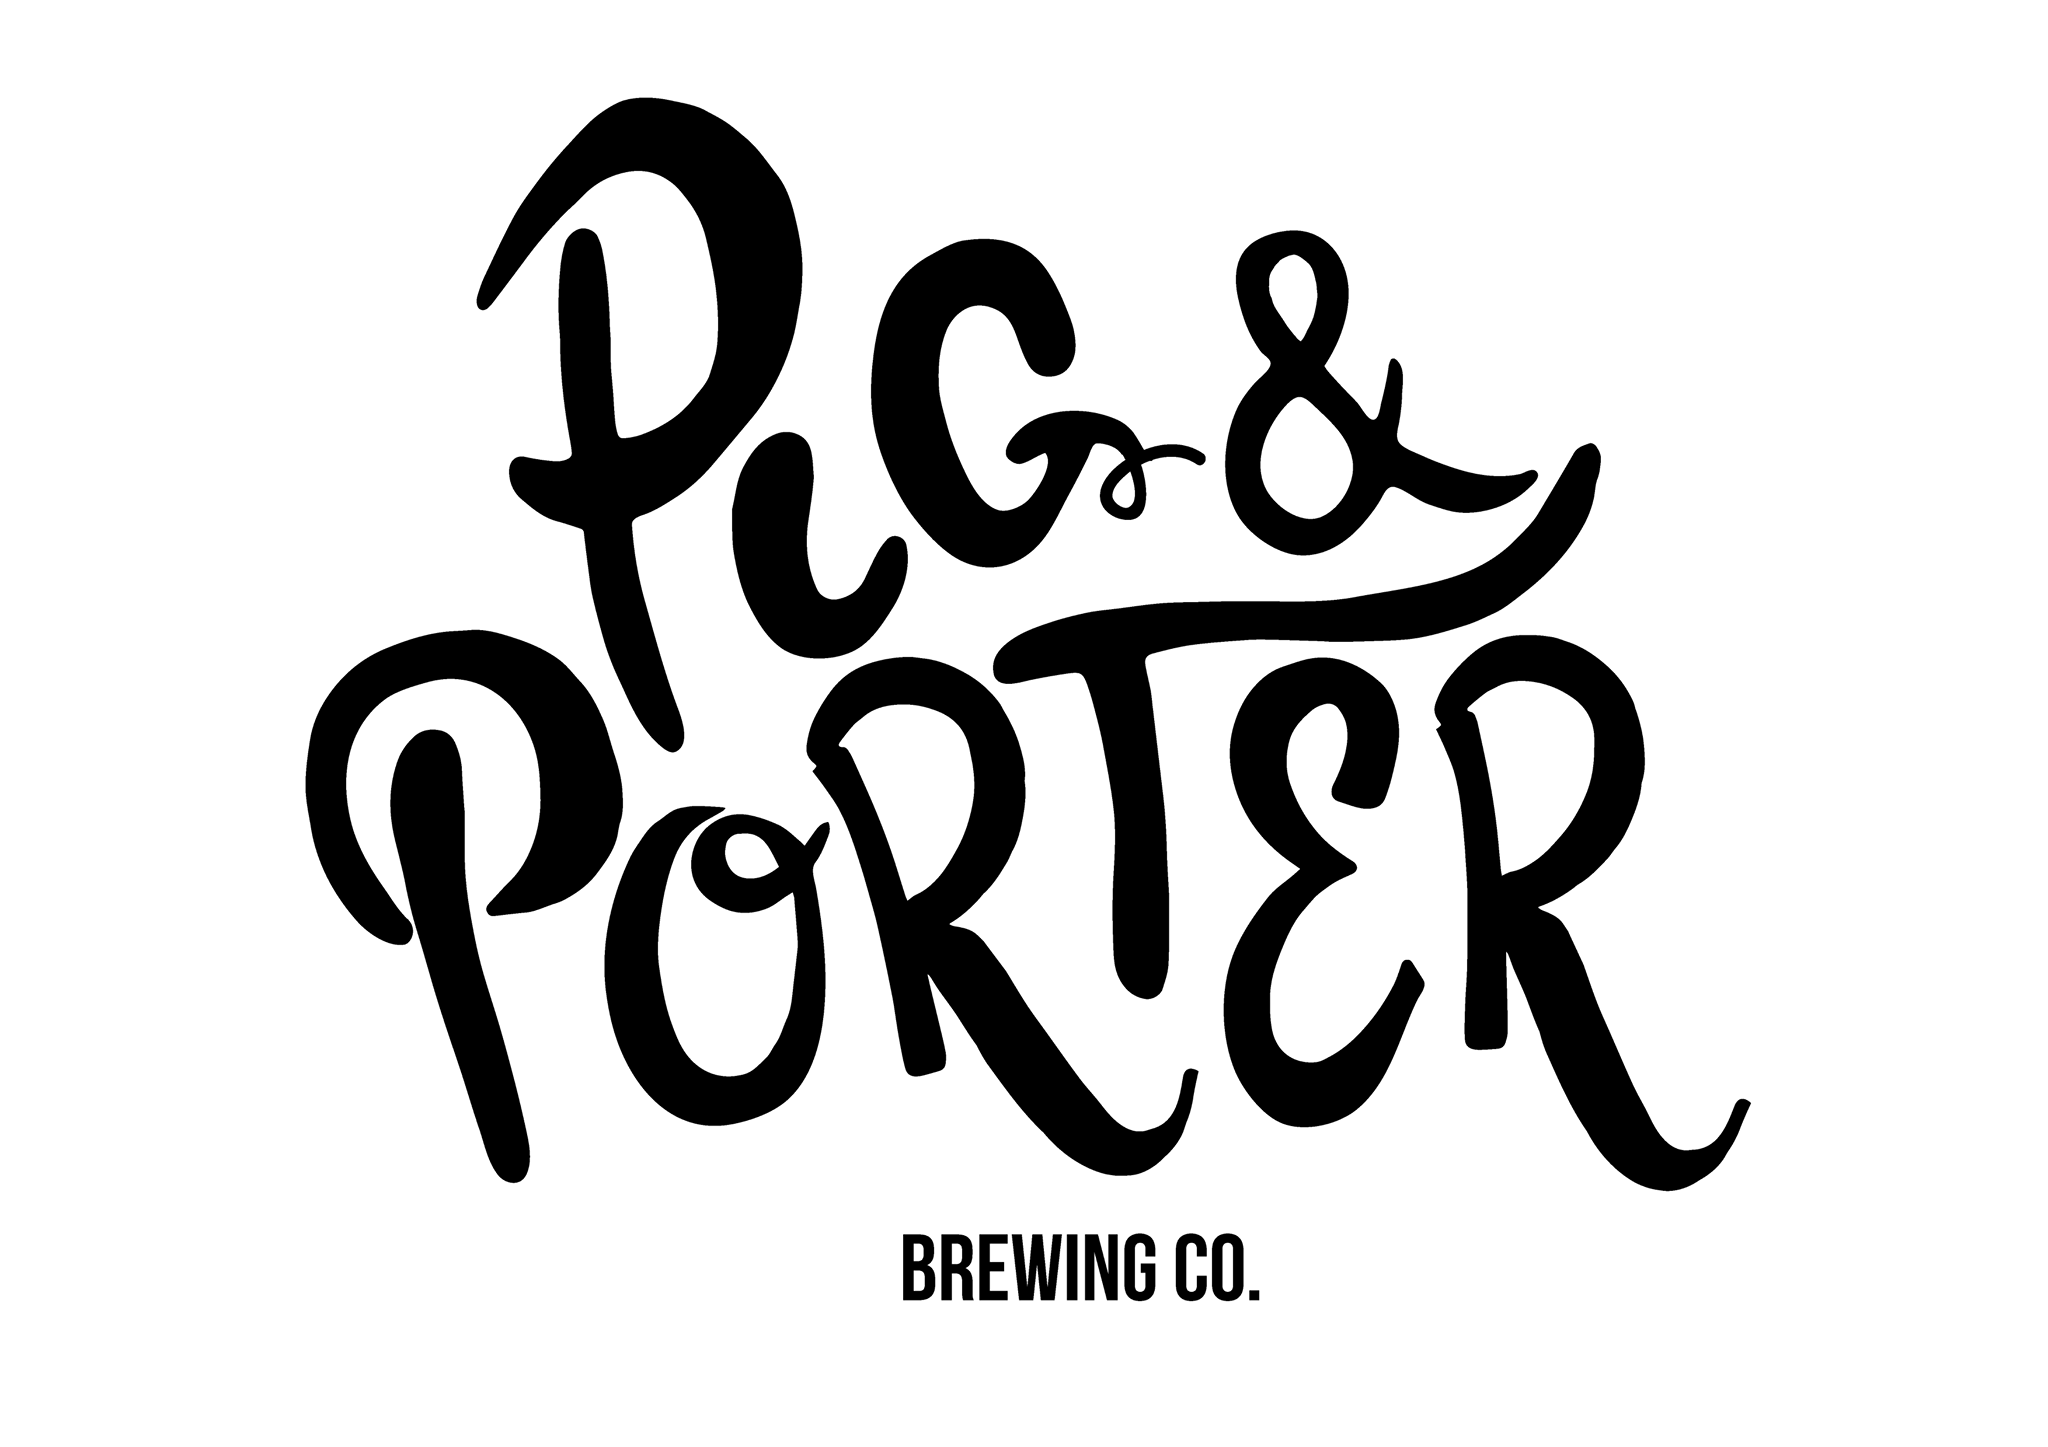 PIG & PORTER logo